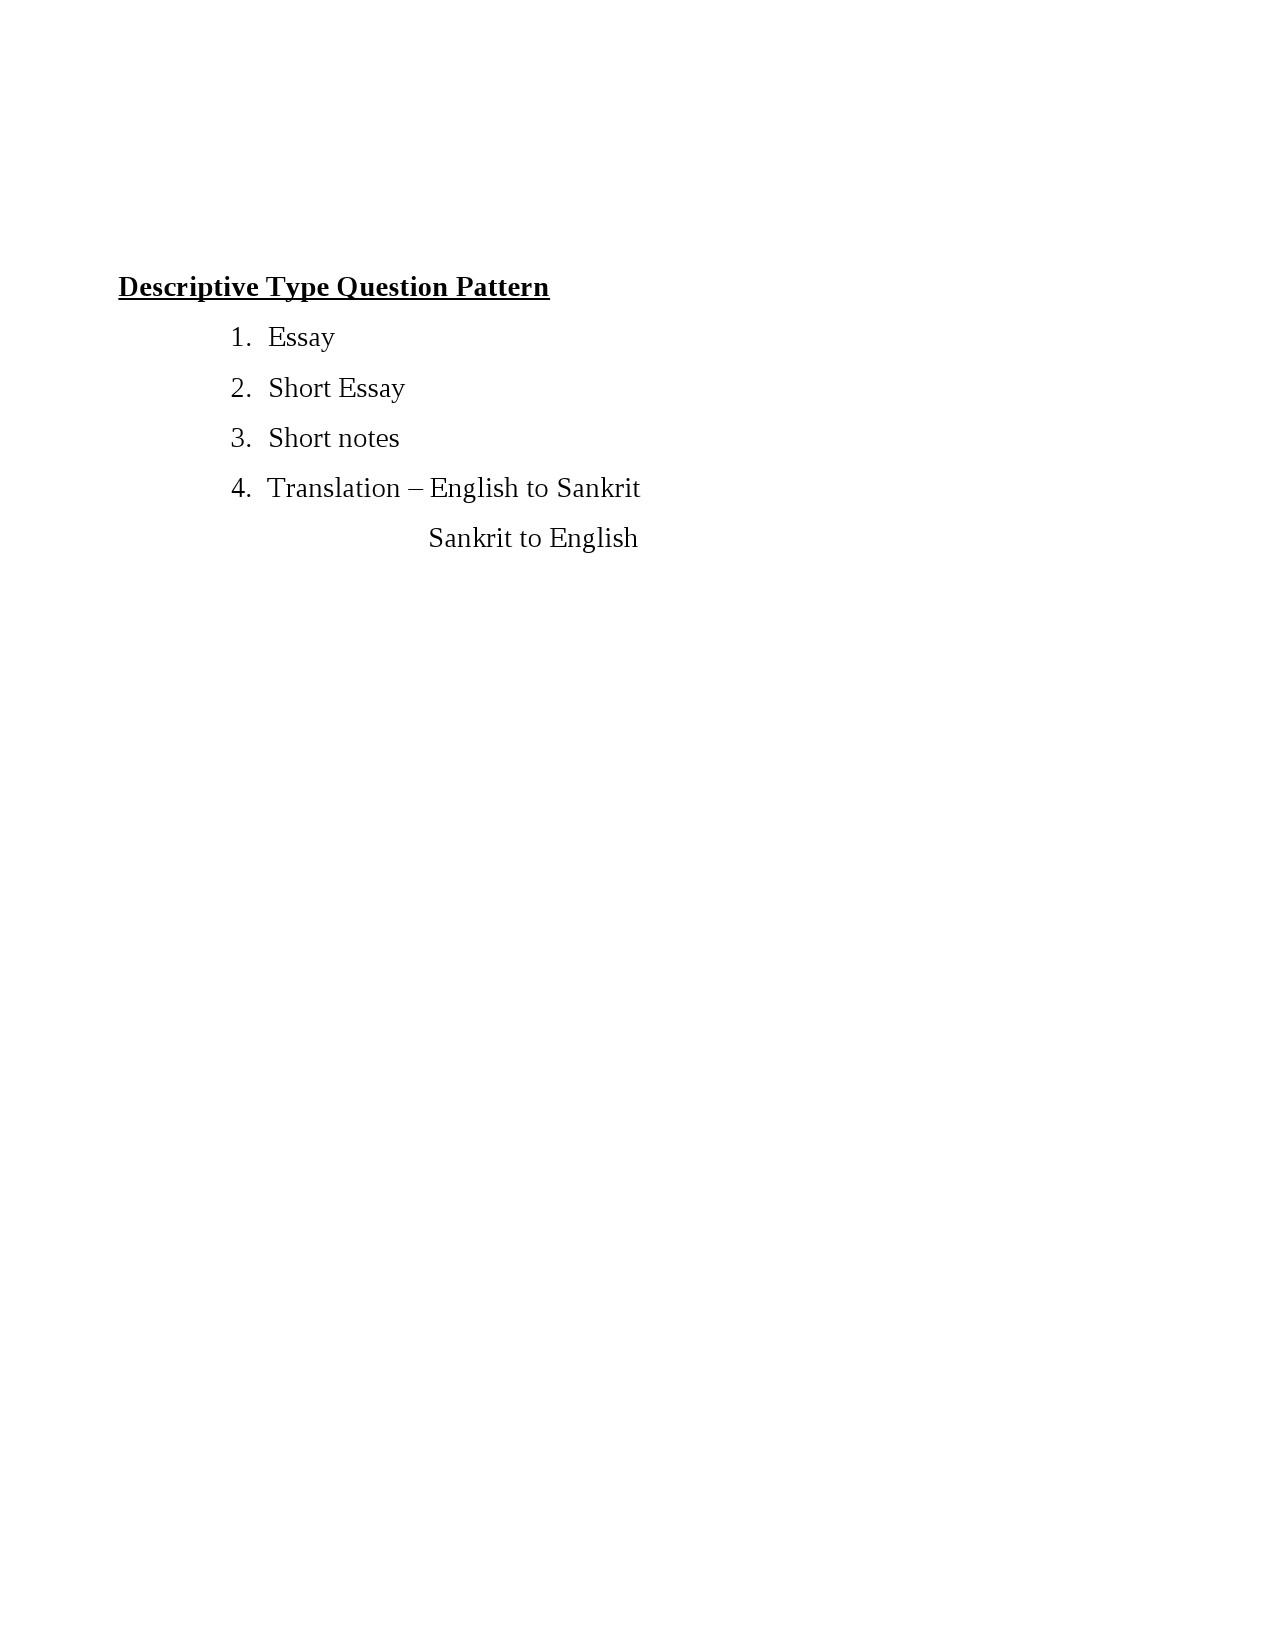 Sanskrit Syllabus for Kerala PSC 2021 Exam - Notification Image 14